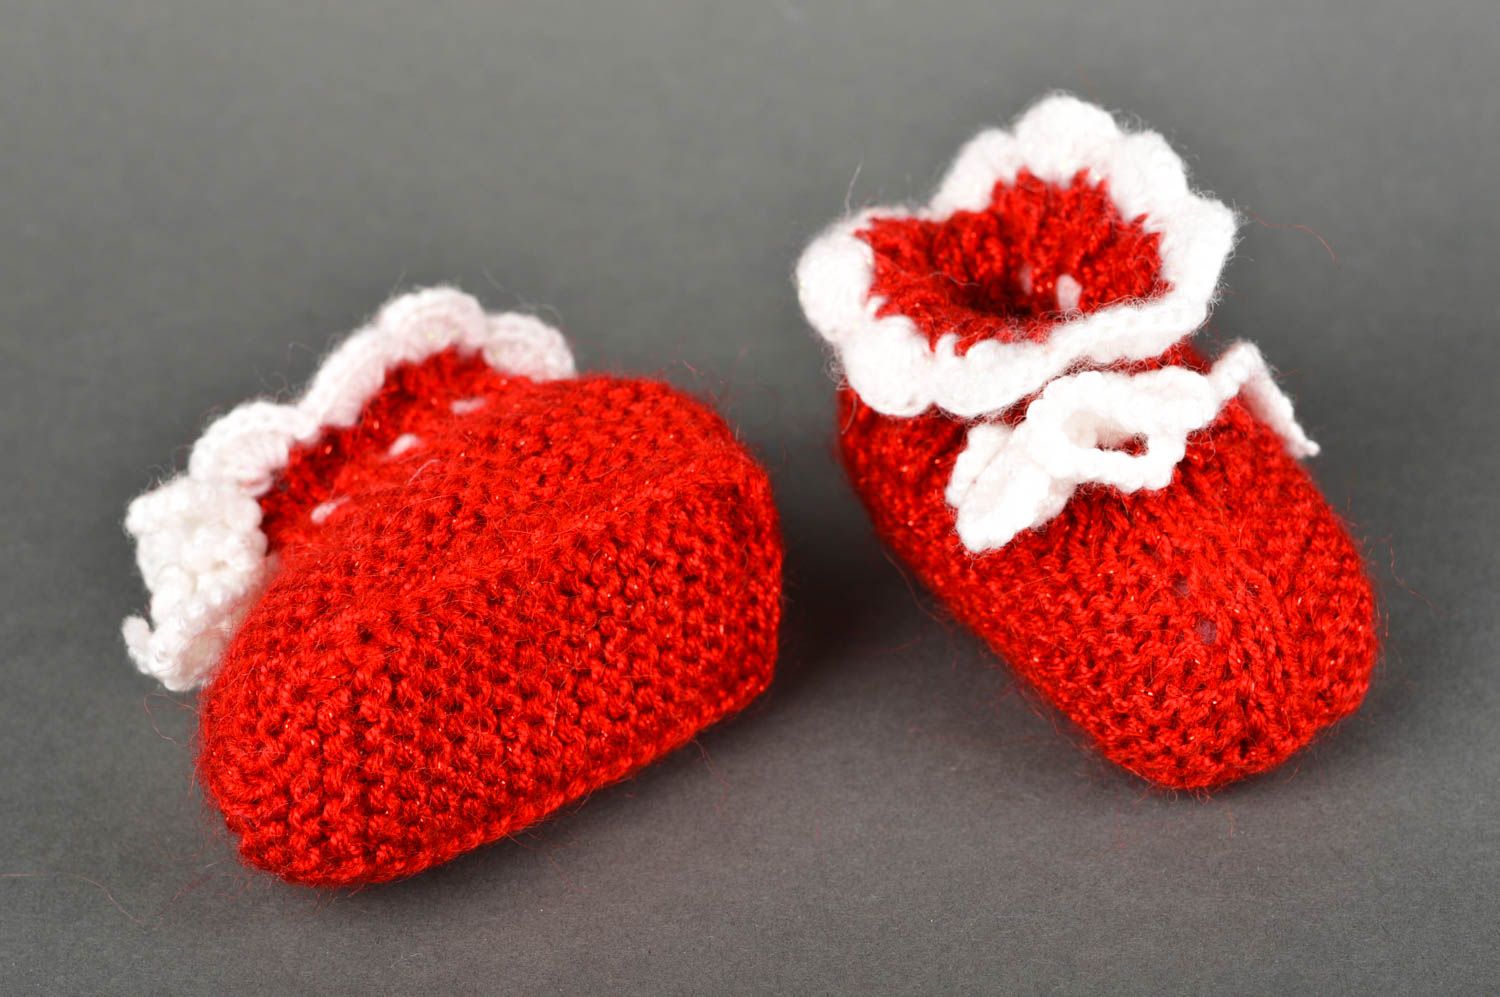 Chaussons rouges faits main Chaussures bébé tricotés au crochet Vêtement bébé photo 5